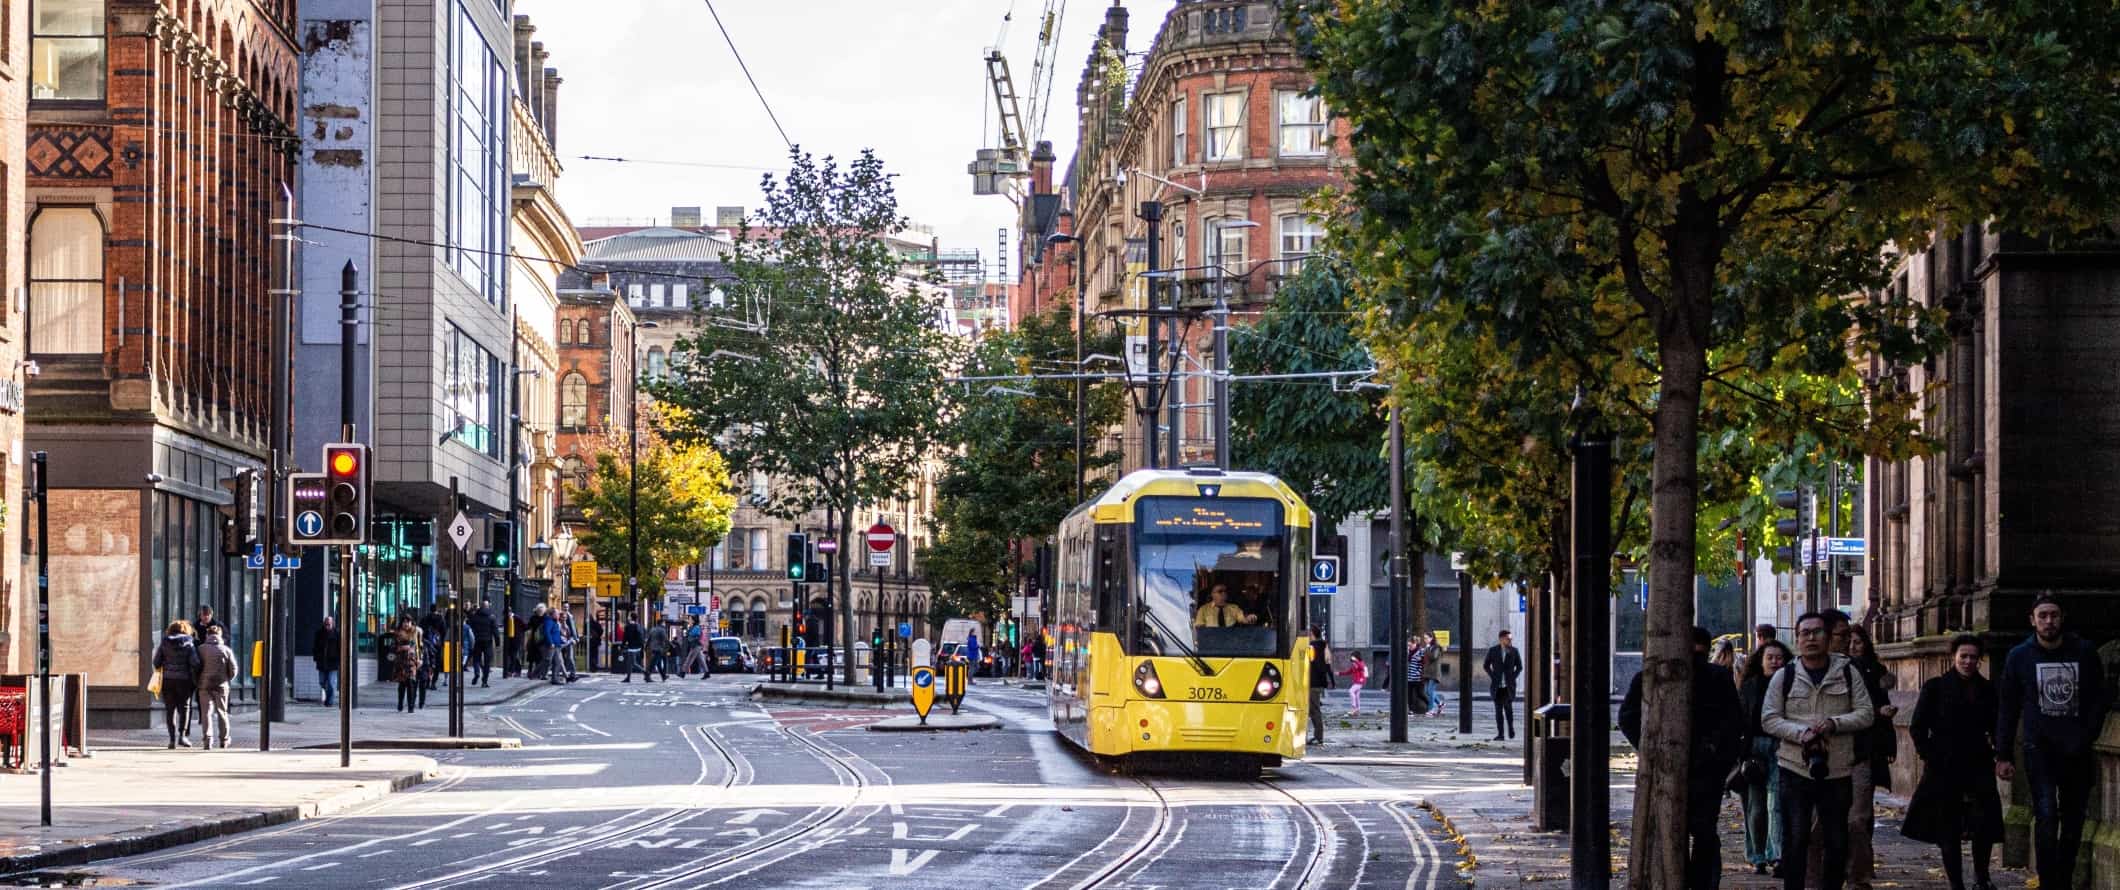 Vista das pessoas andando pela rua e passando por um bonde amarelo em Manchester, Inglaterra